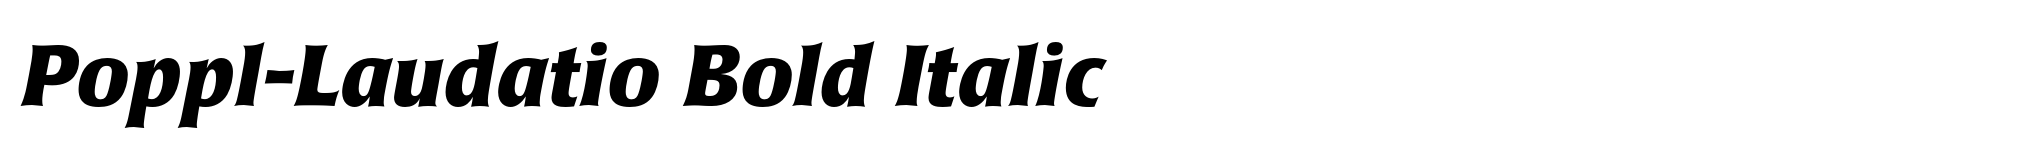 Poppl-Laudatio Bold Italic image